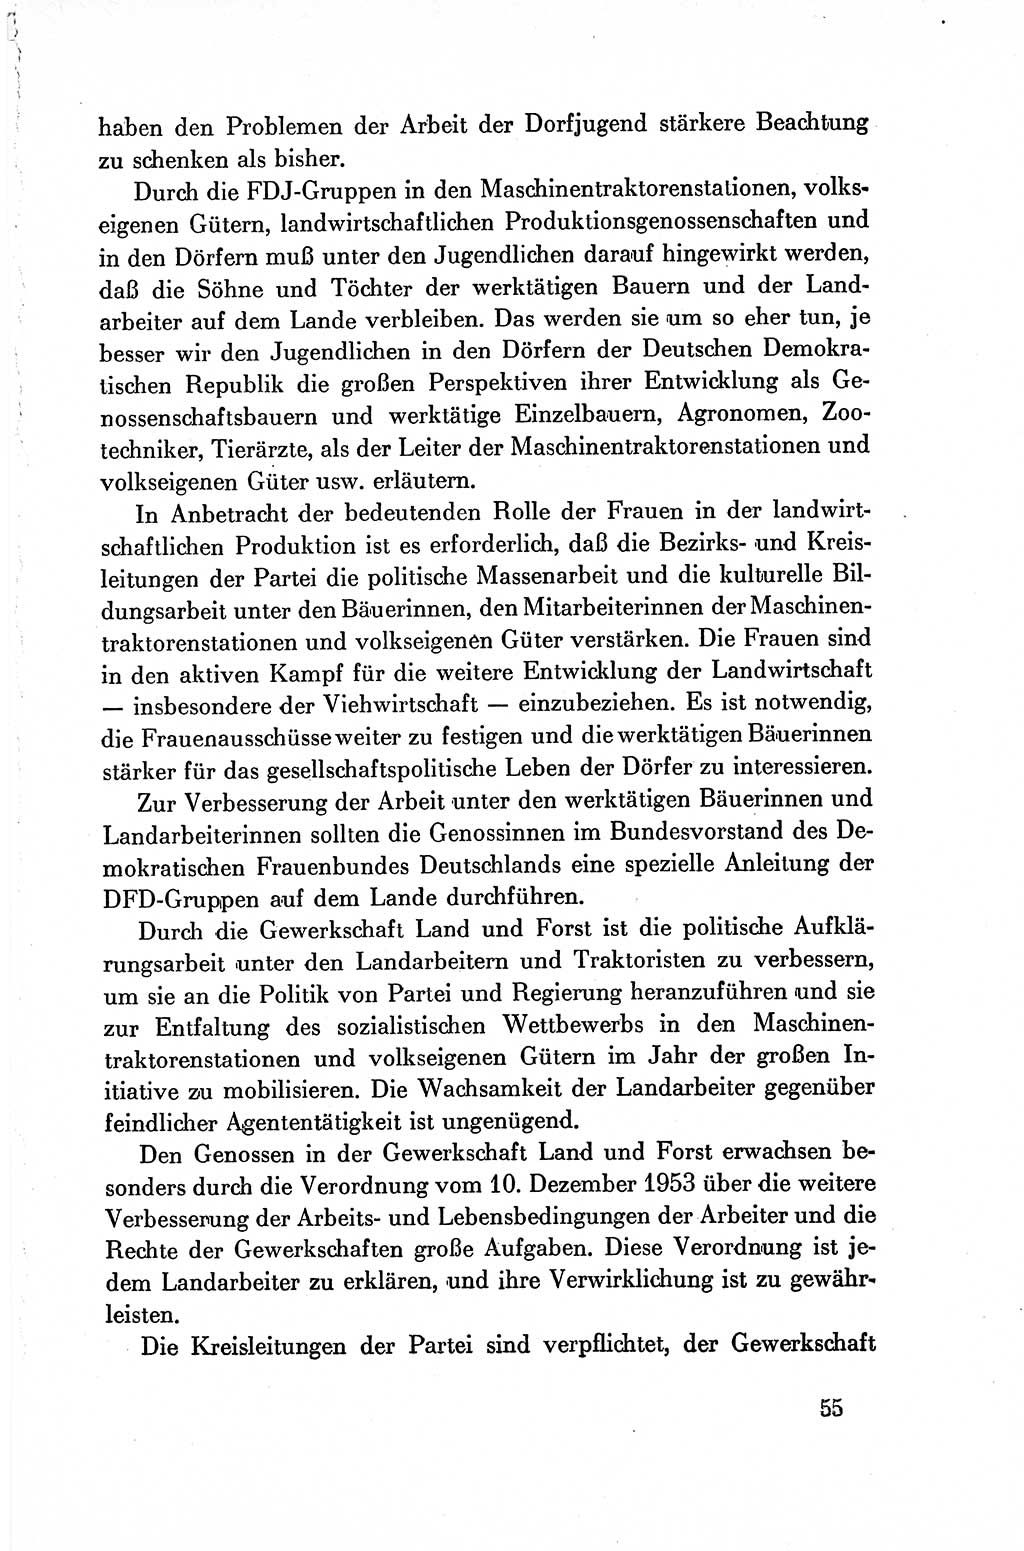 Dokumente der Sozialistischen Einheitspartei Deutschlands (SED) [Deutsche Demokratische Republik (DDR)] 1954-1955, Seite 55 (Dok. SED DDR 1954-1955, S. 55)